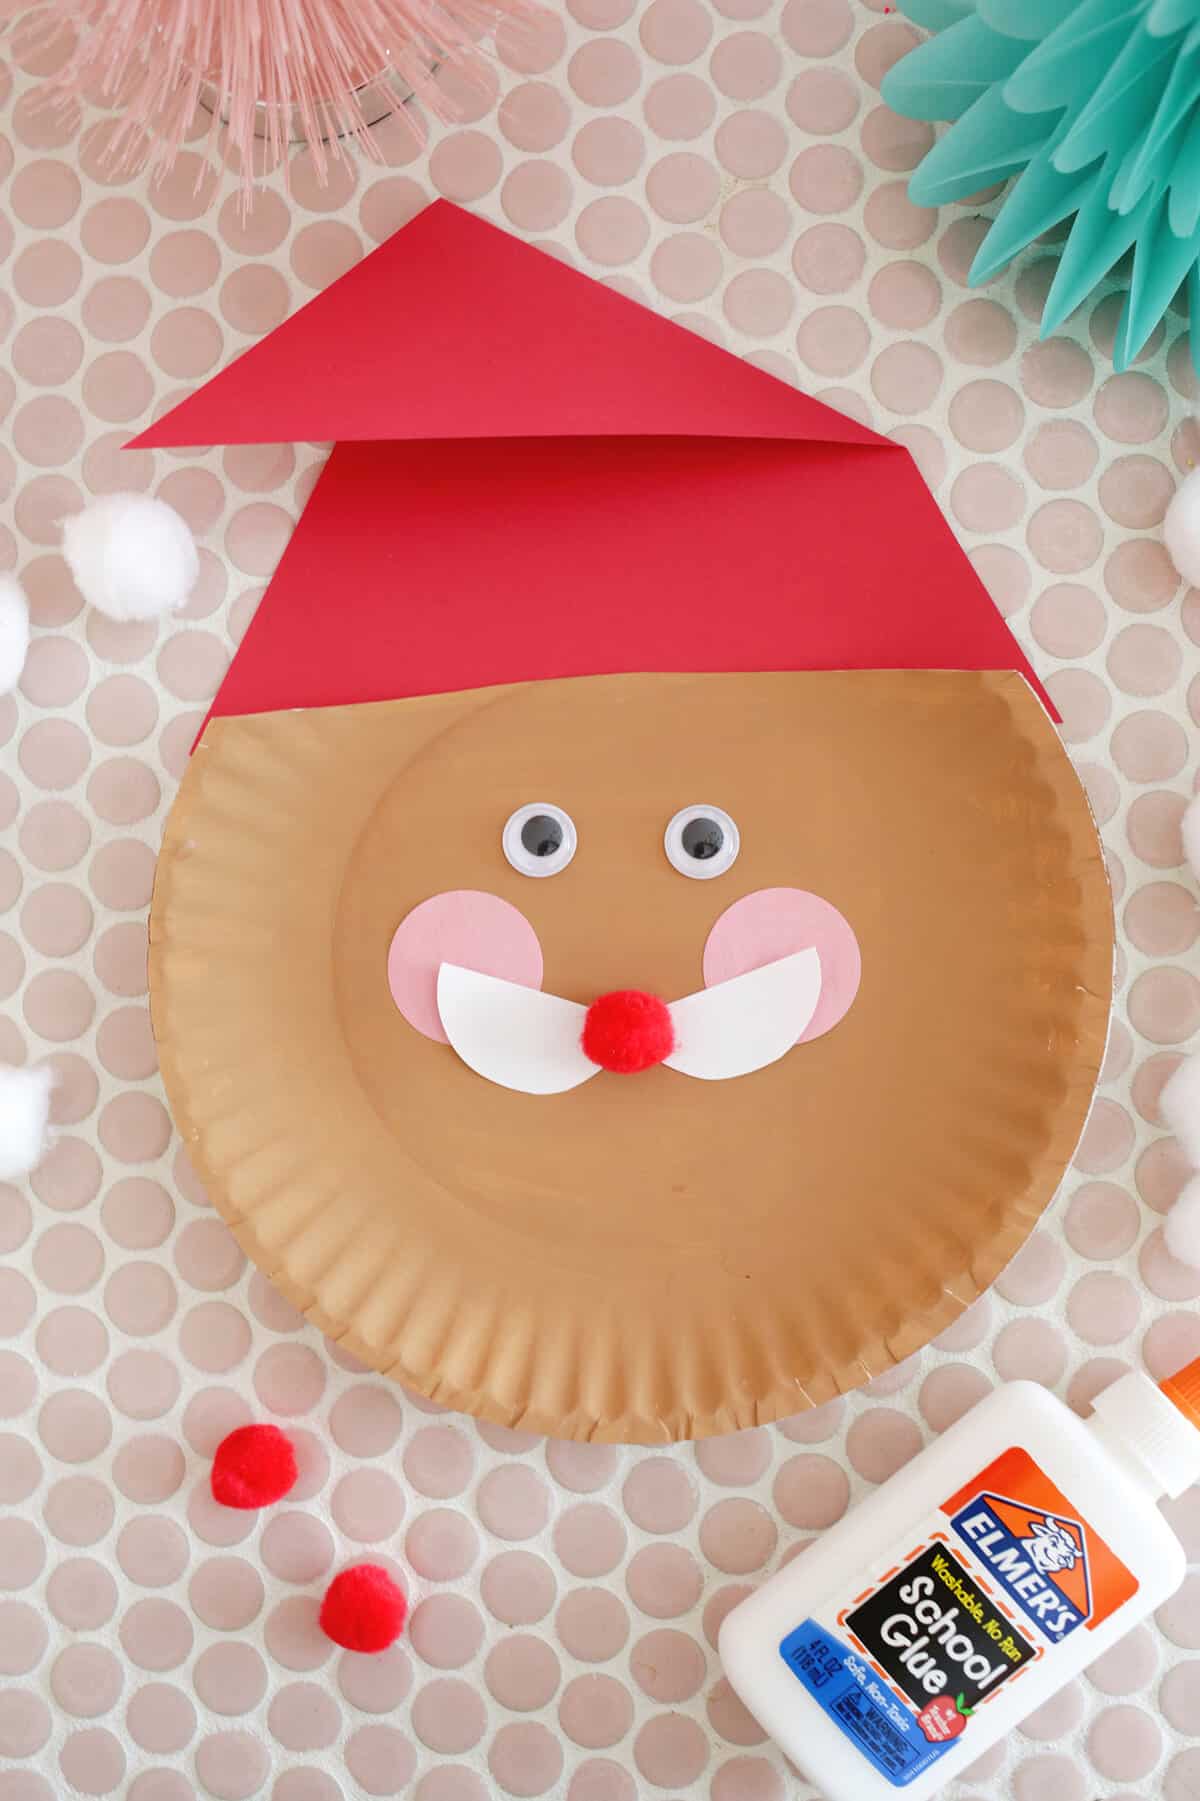 paper plate santa with google eyes and pink circle cheeks